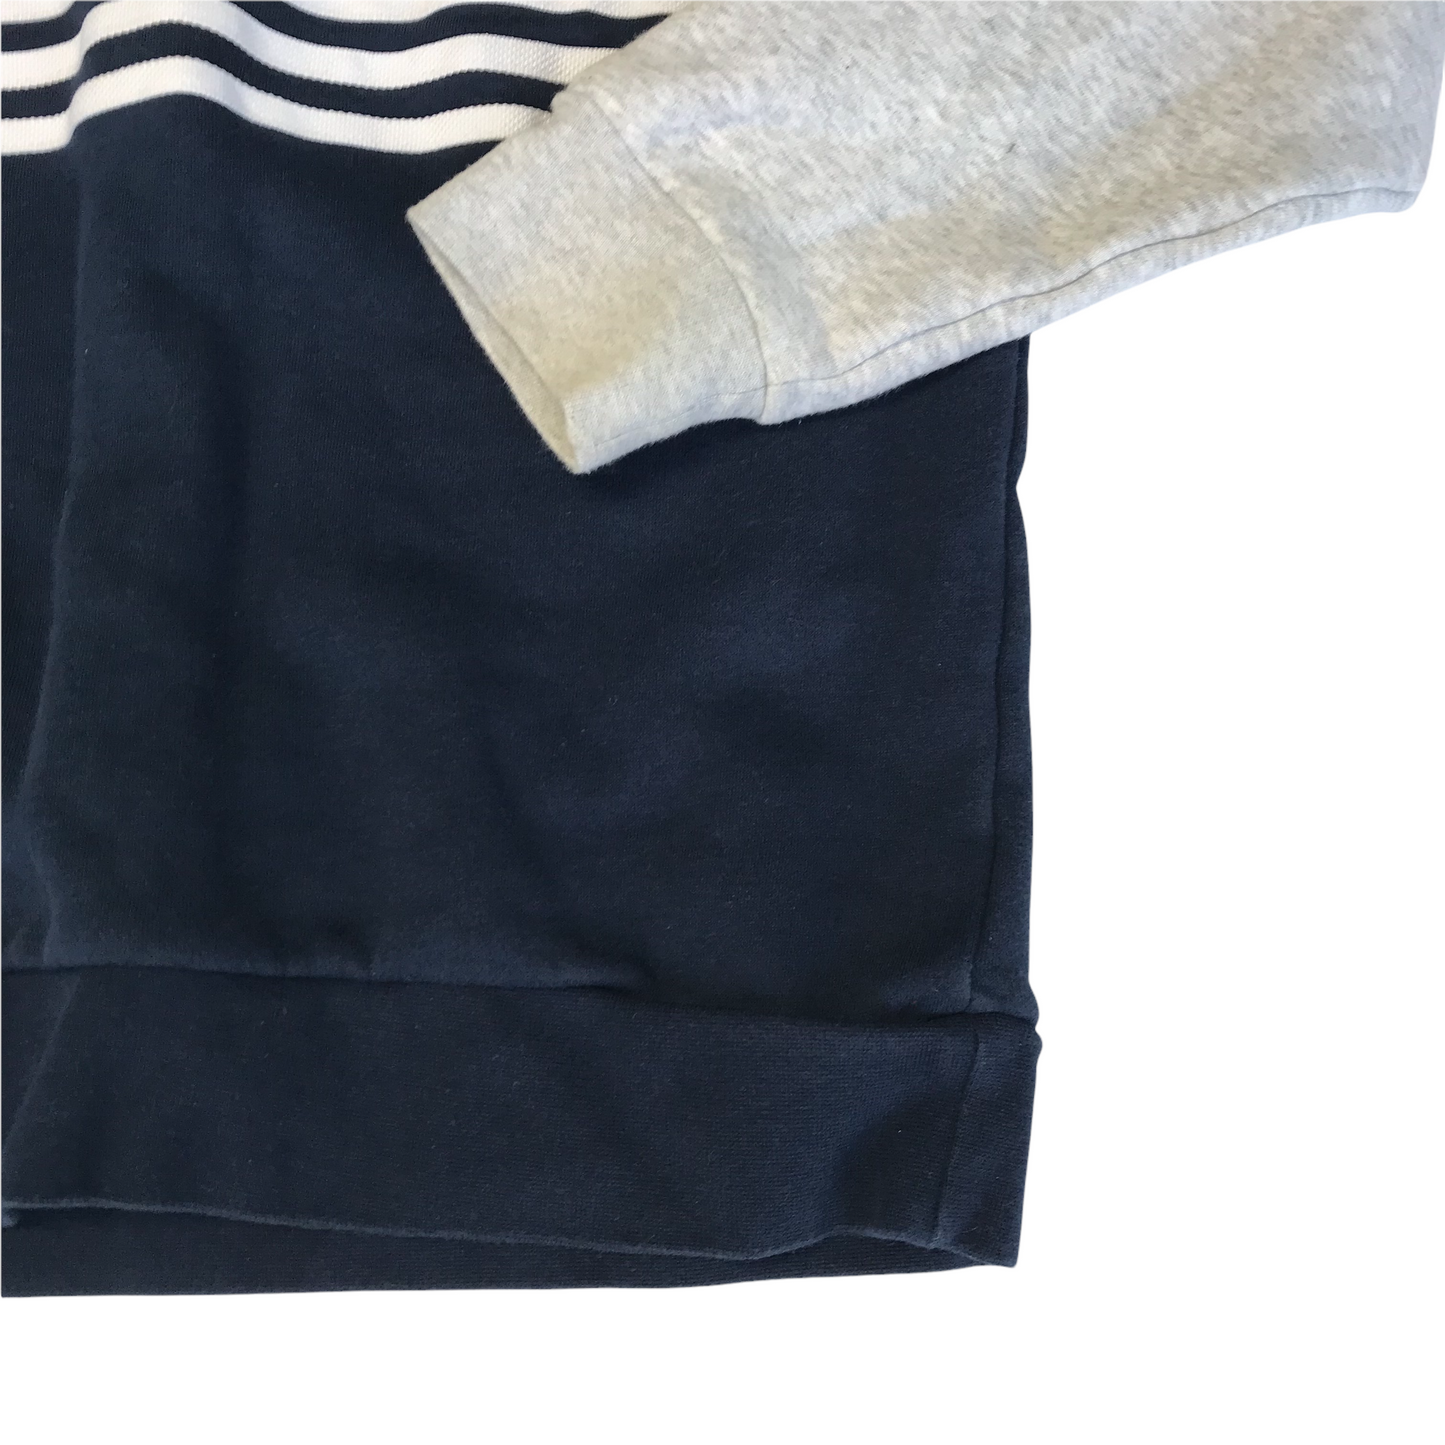 Adidas navy and Grey Sweatshirt Age 13